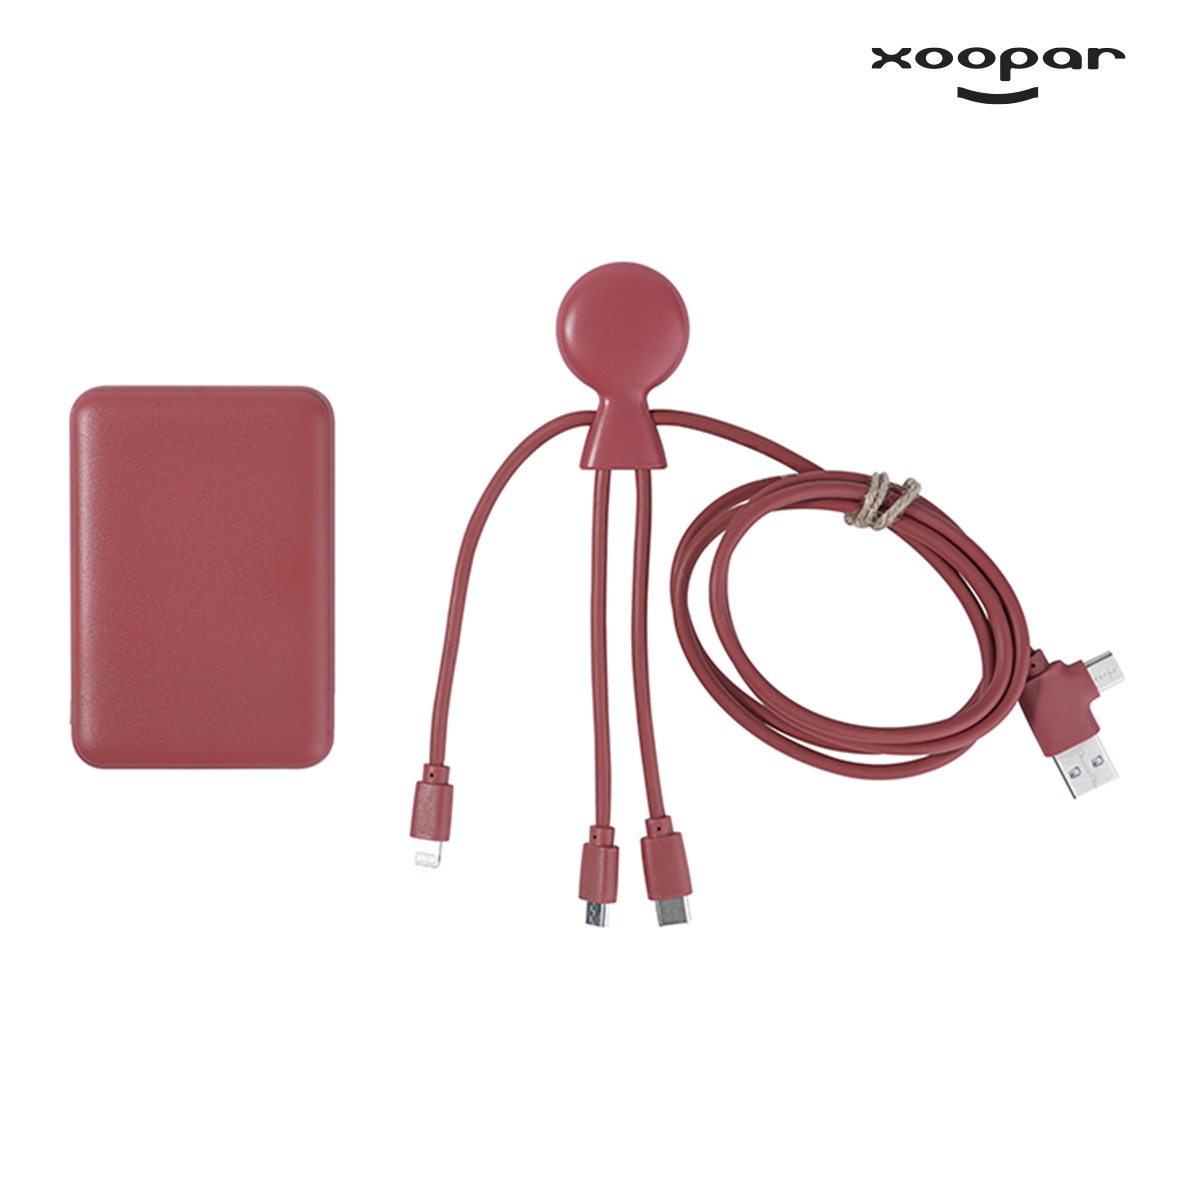 batterie chargeur et cables eco xoopar personnalise-4